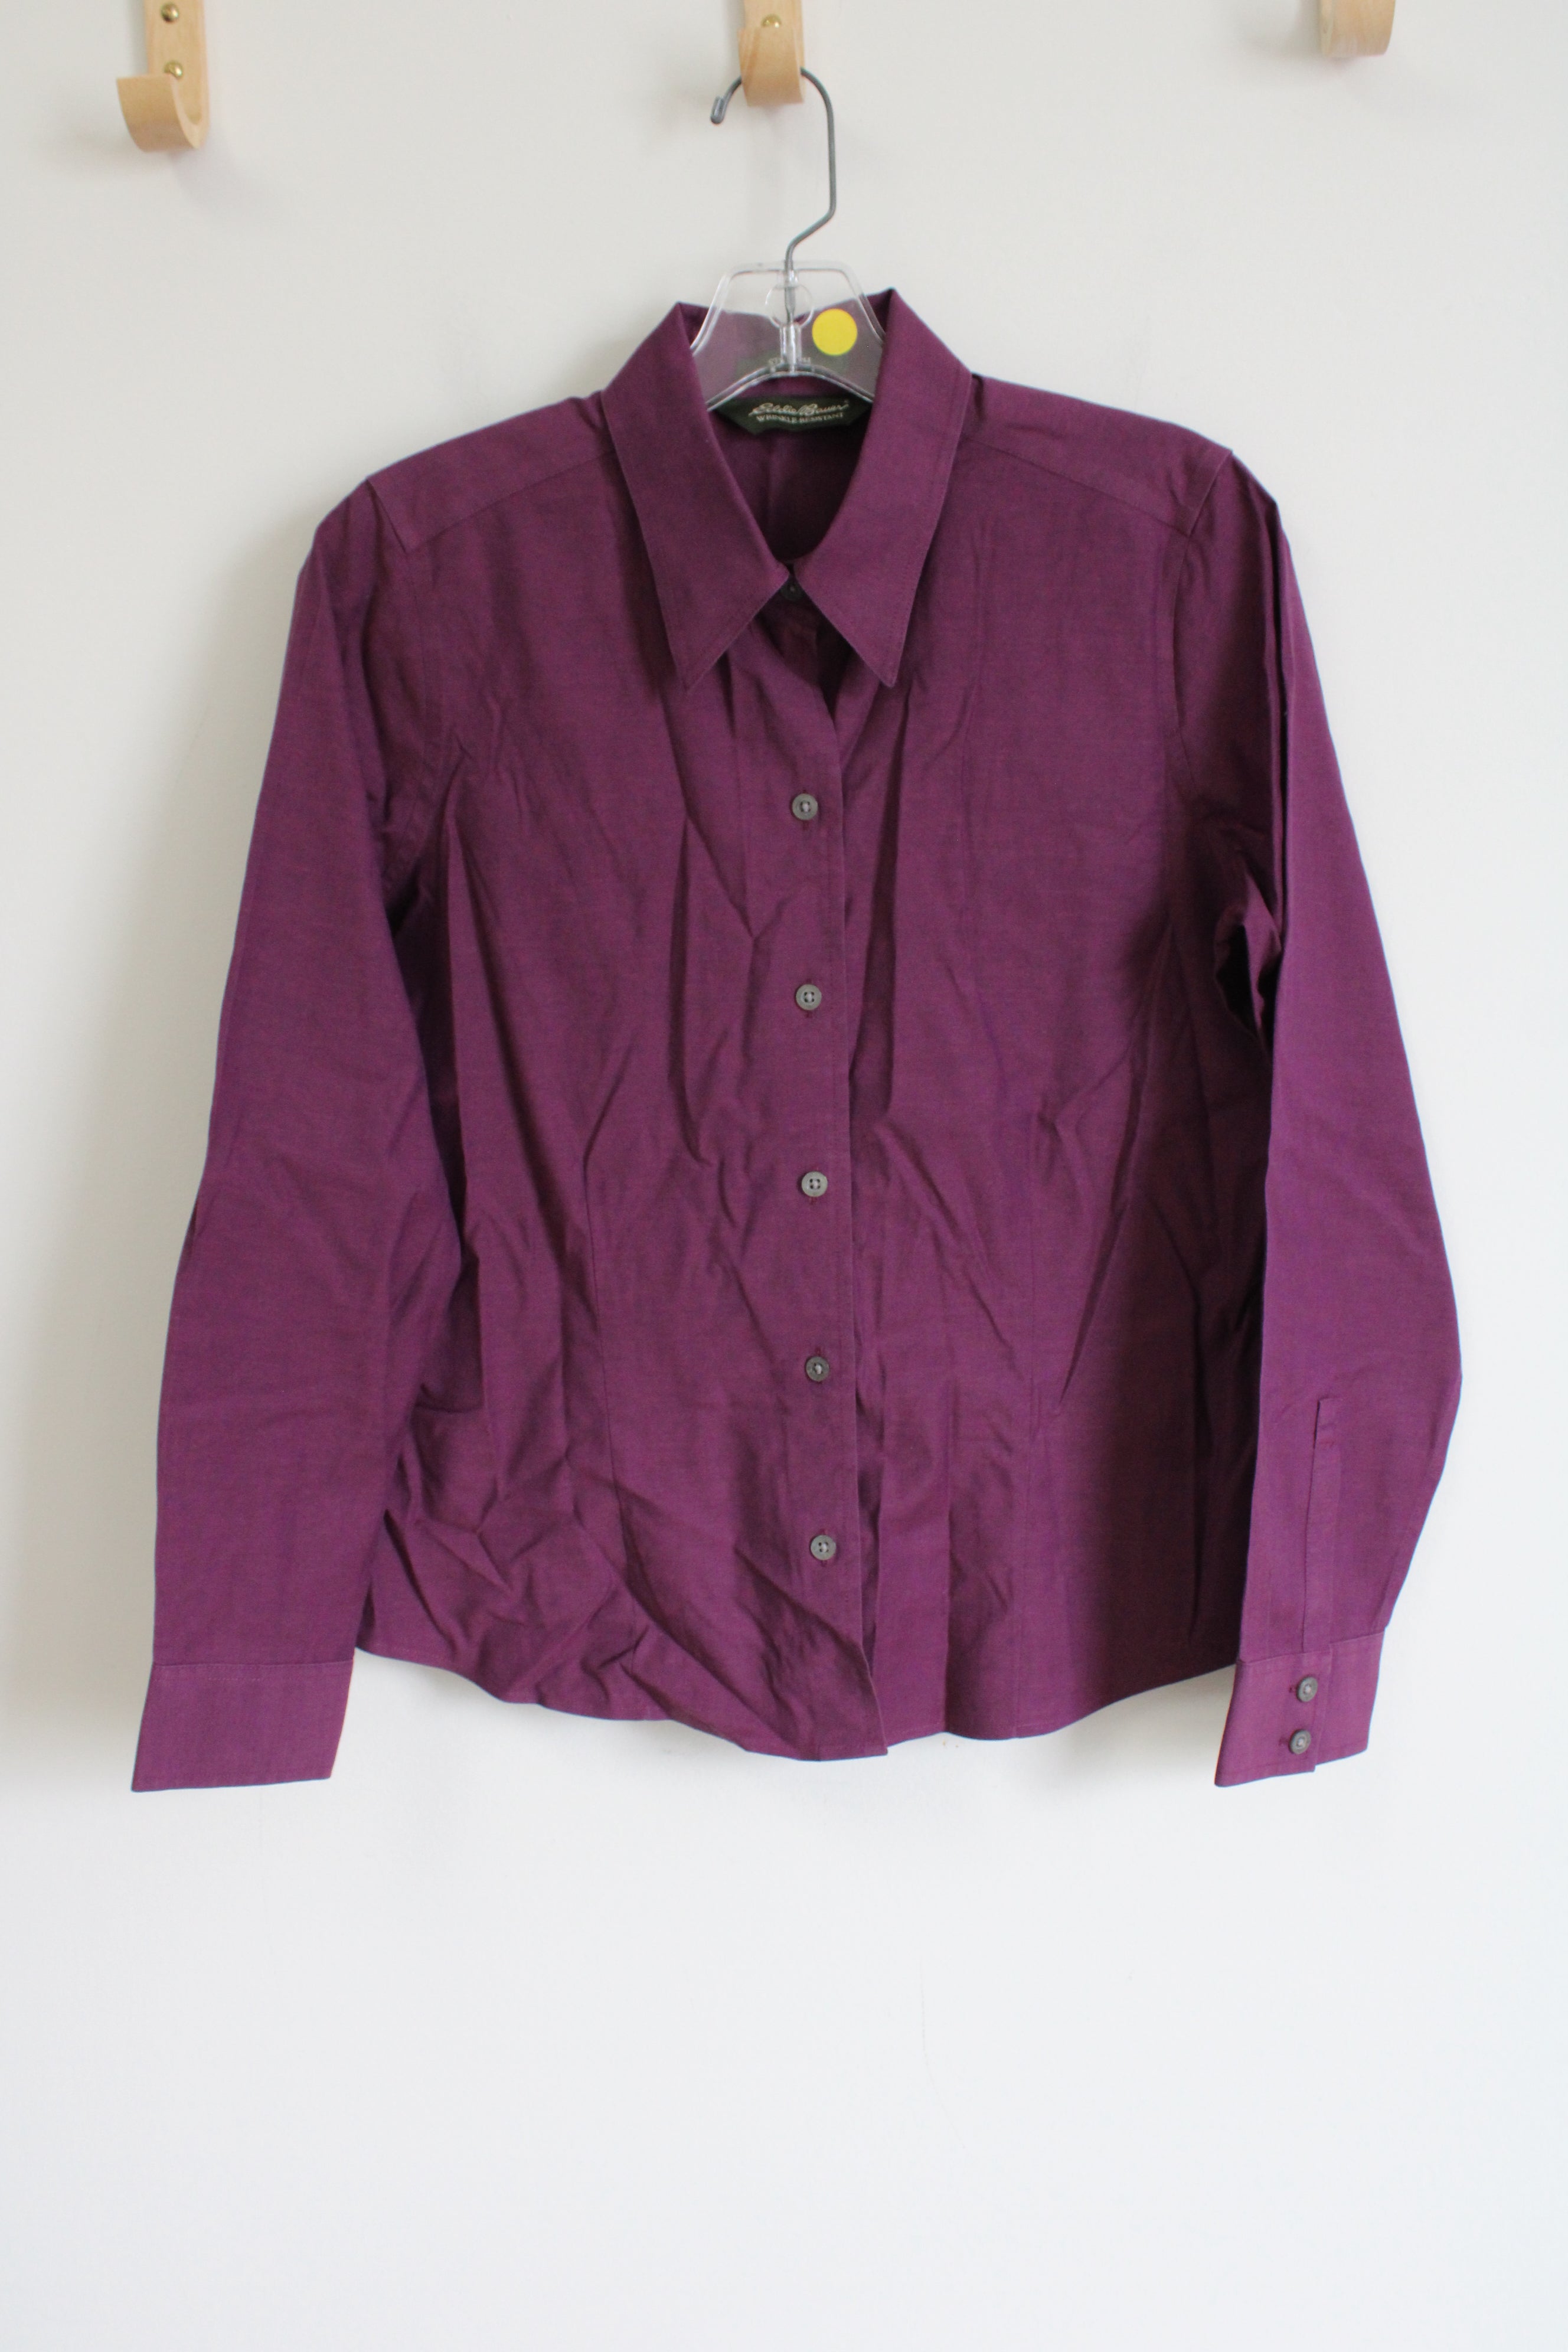 Eddie Bauer Stretch Purple Button Down Shirt | S Petite